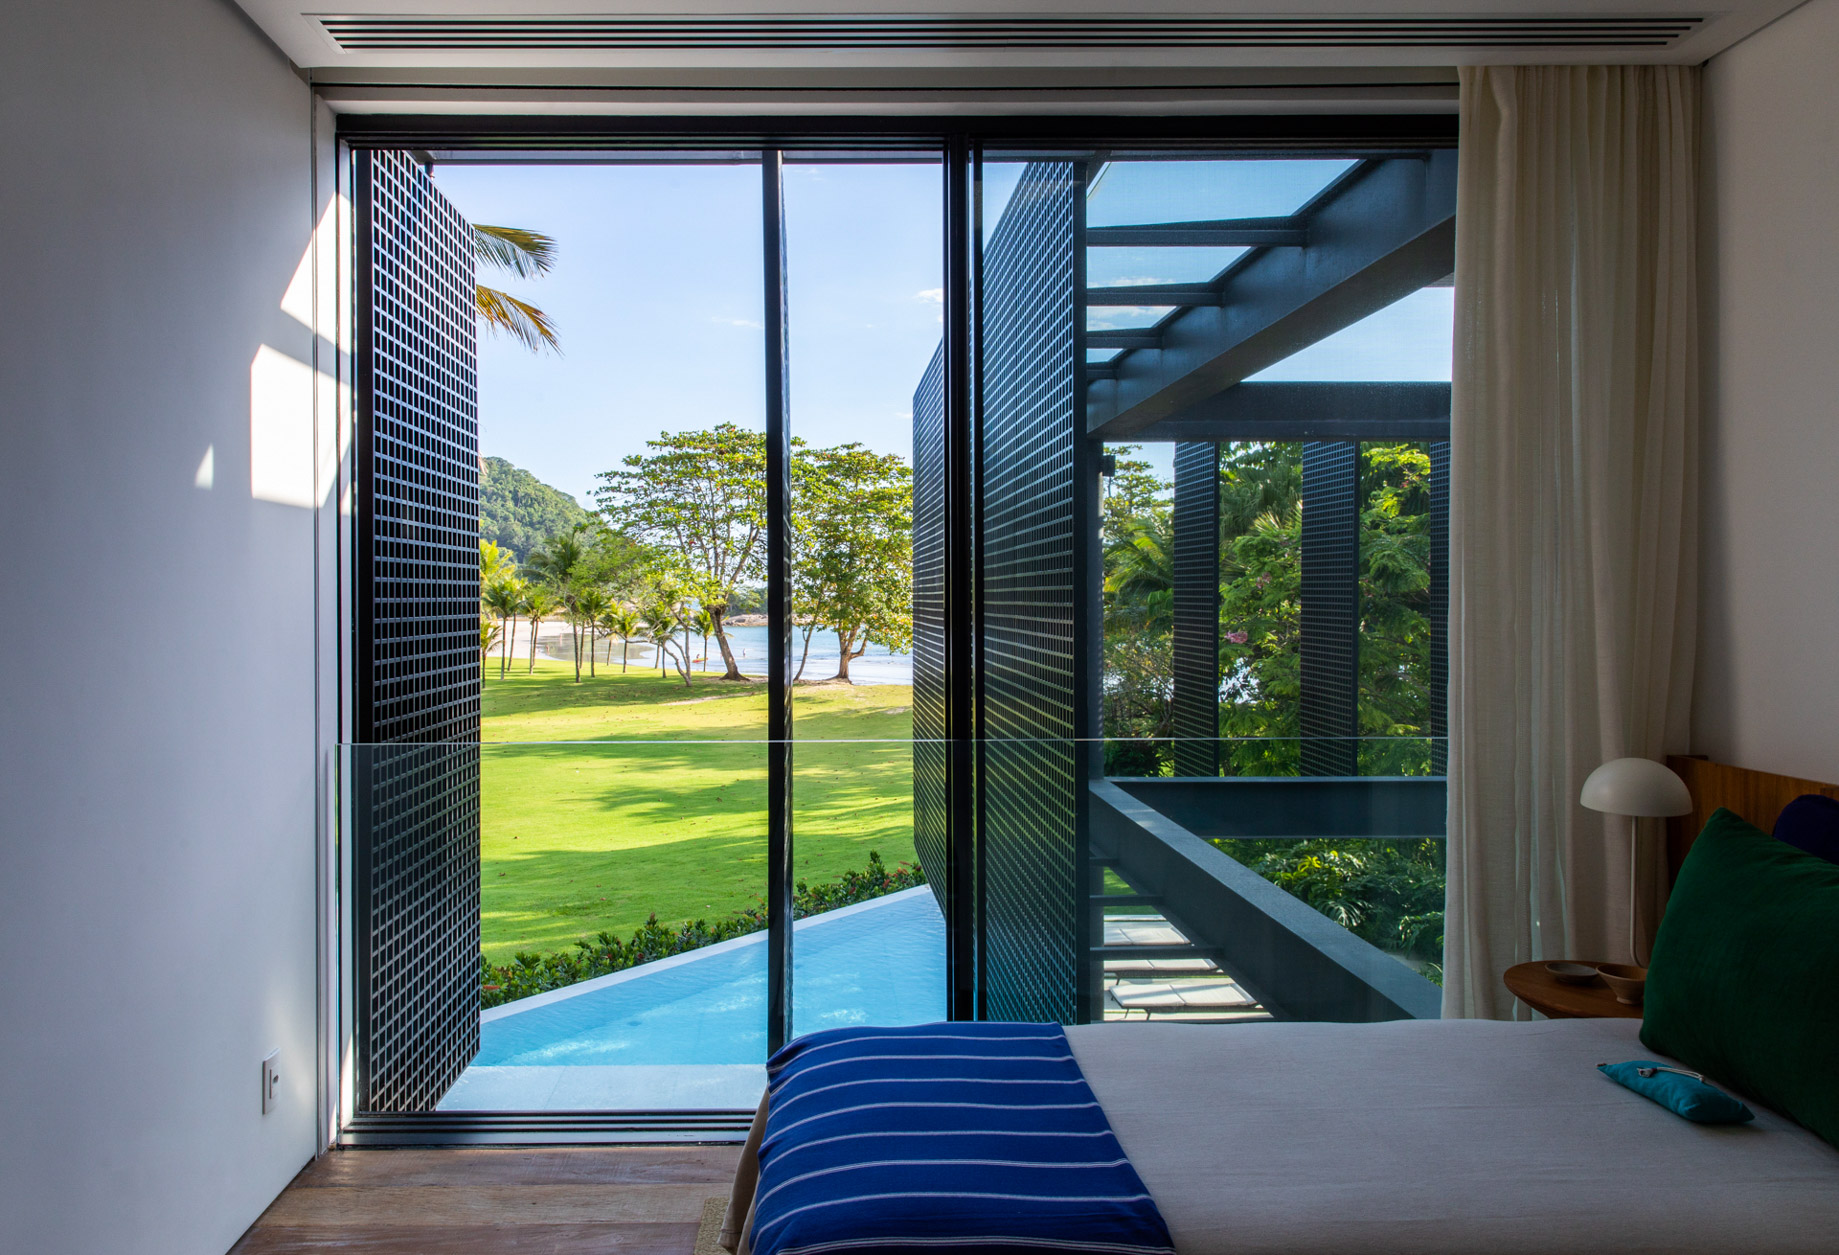 JSL House Costa Verde Residence – Paraty, Brazil